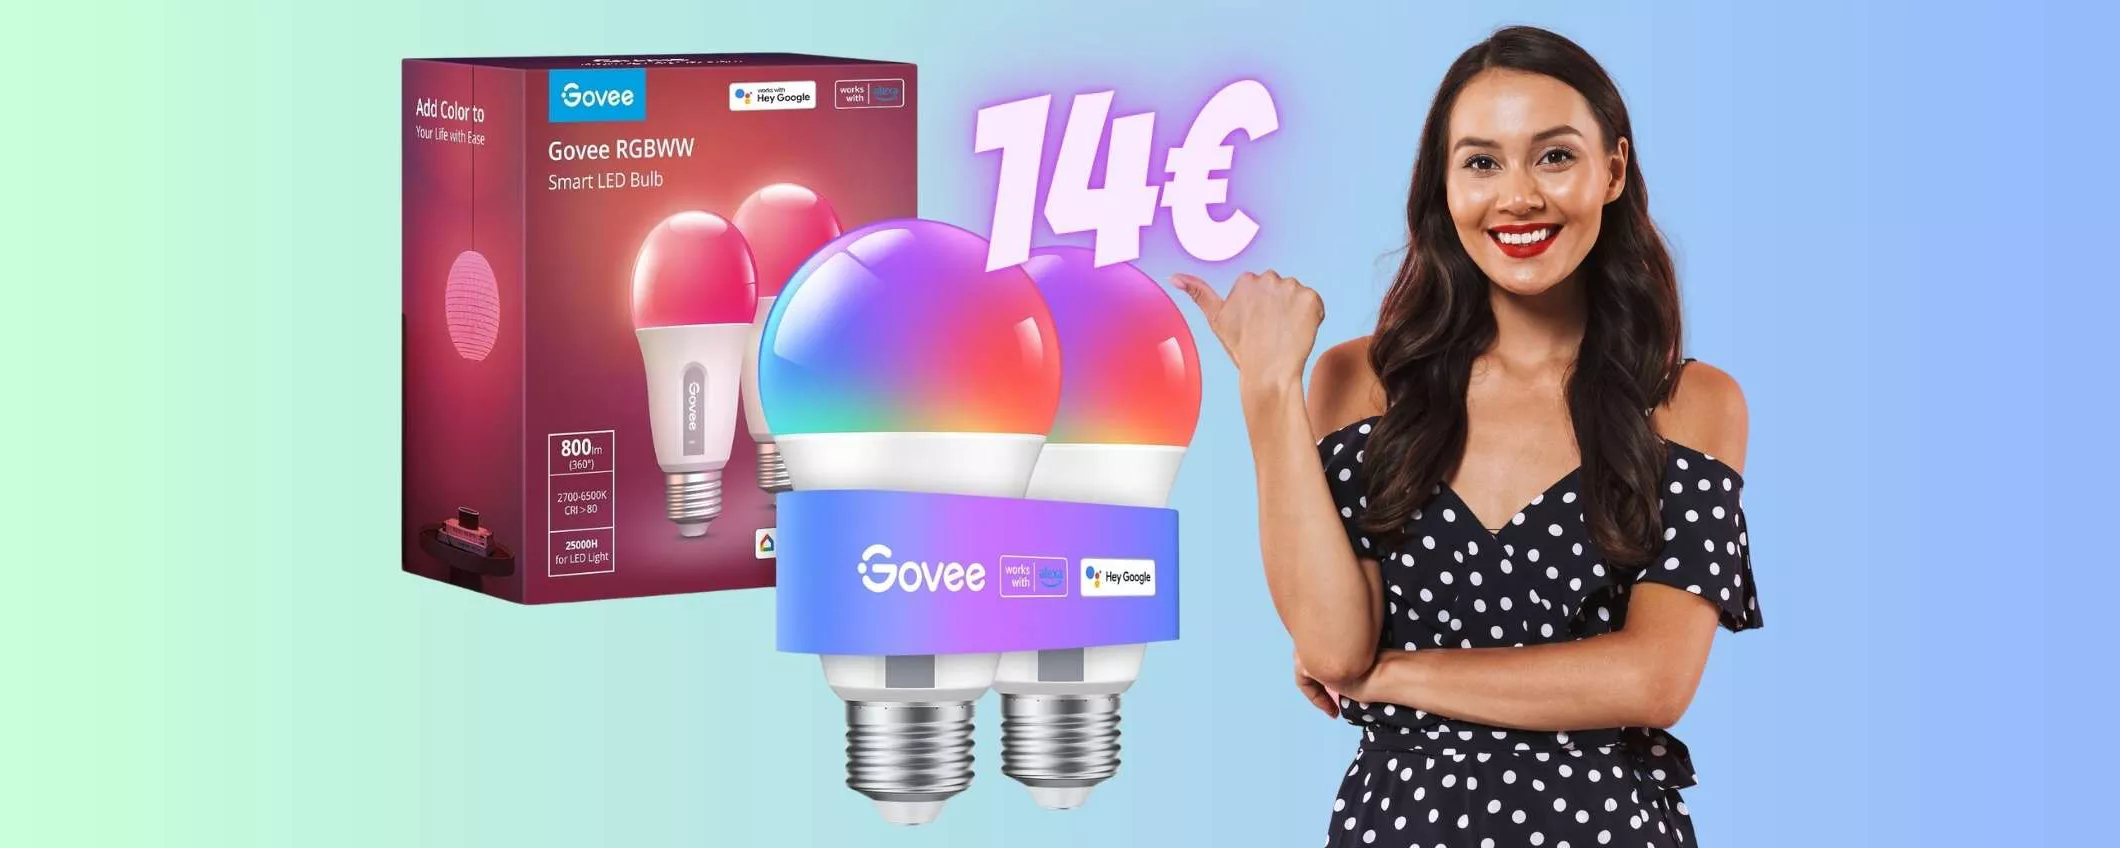 2 lampadine smart multicolore con comandi vocali a 14€ su Amazon